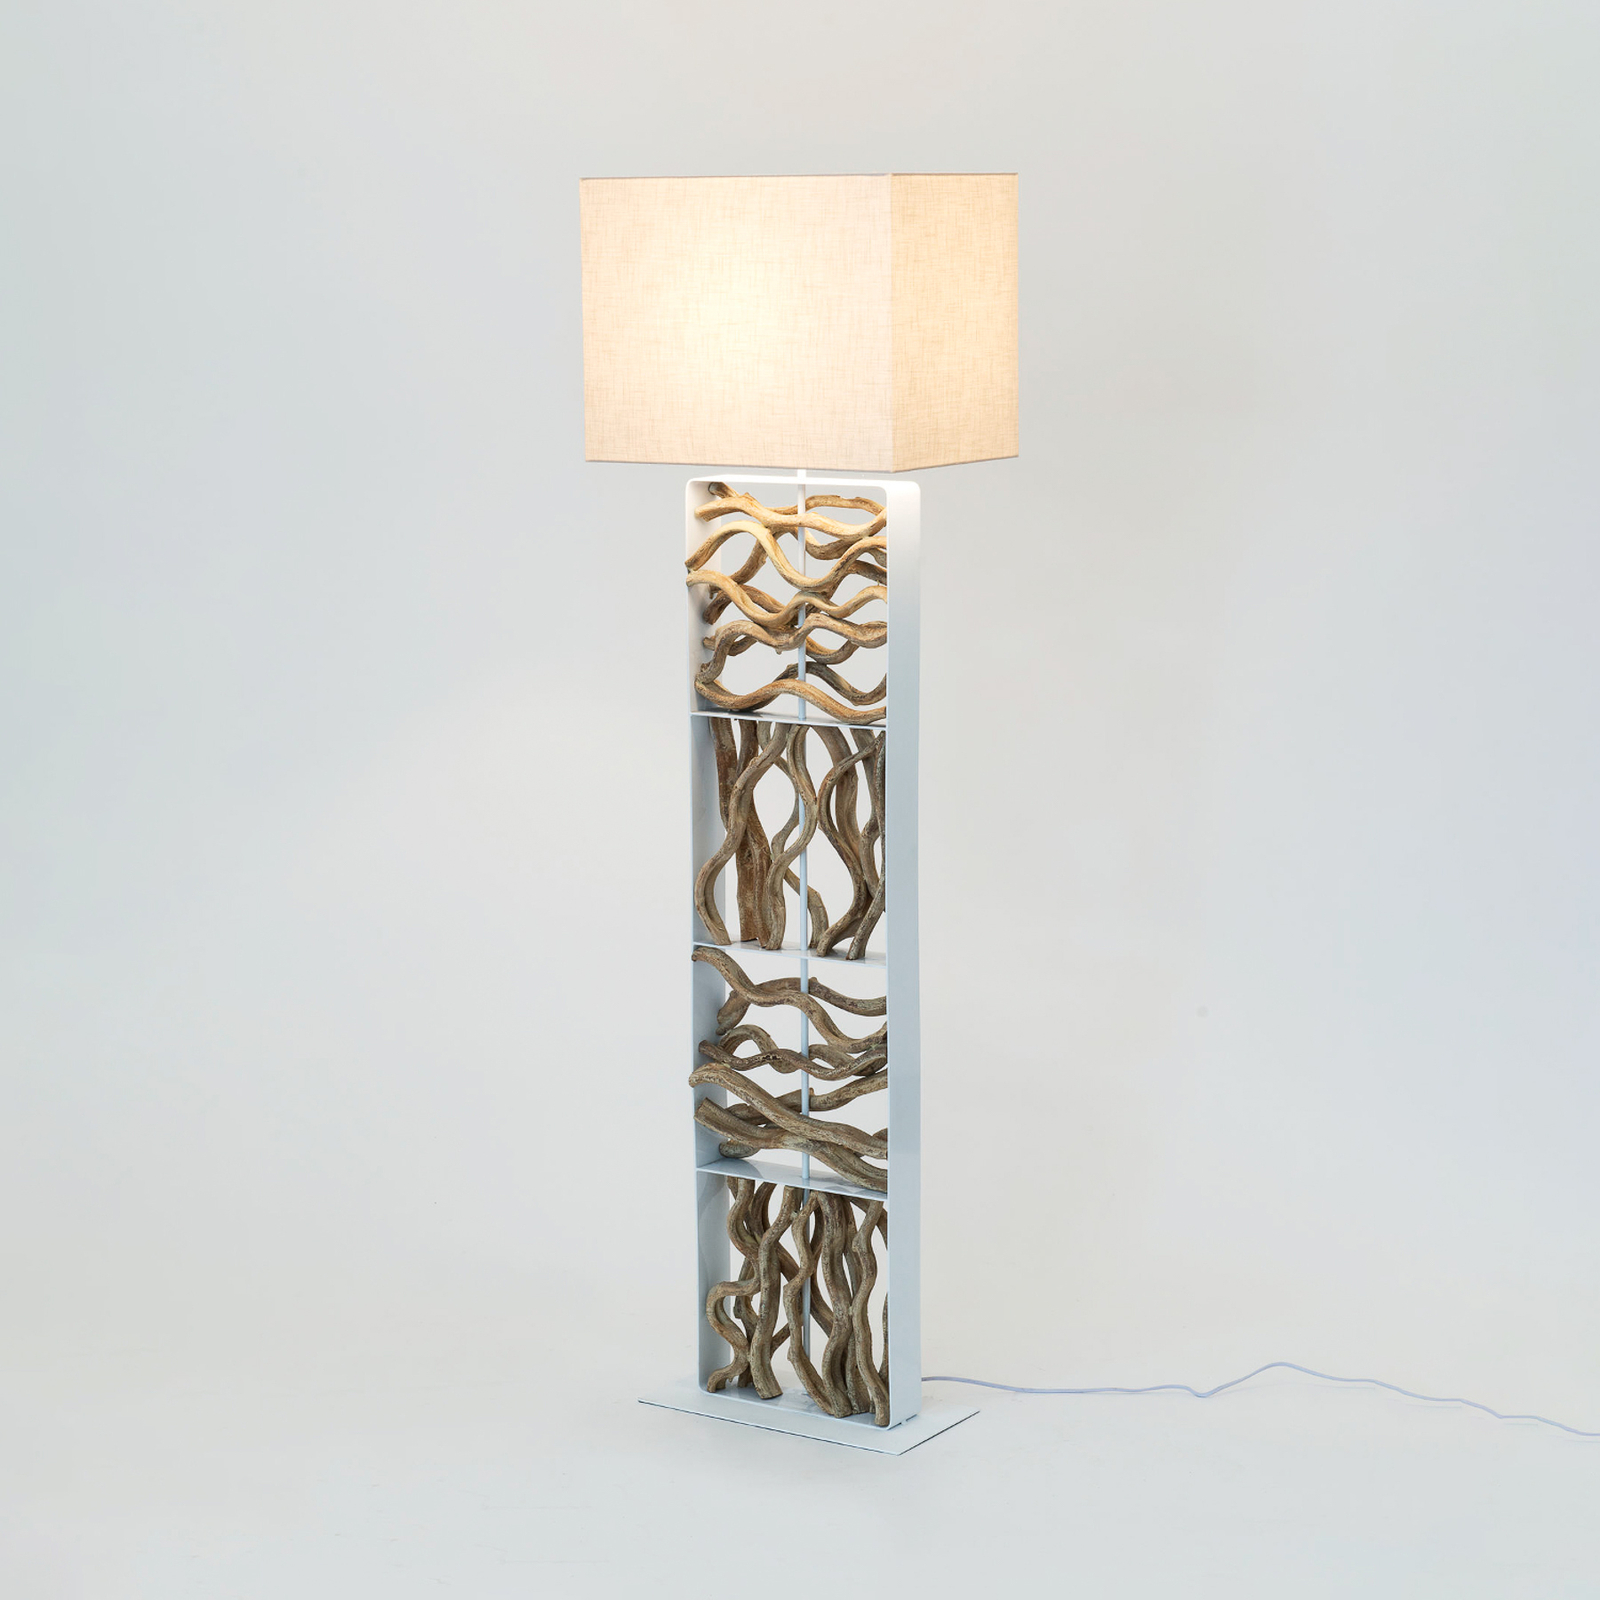 Vloerlamp Tremiti, houtkleurig/beige, hoogte 160 cm, hout